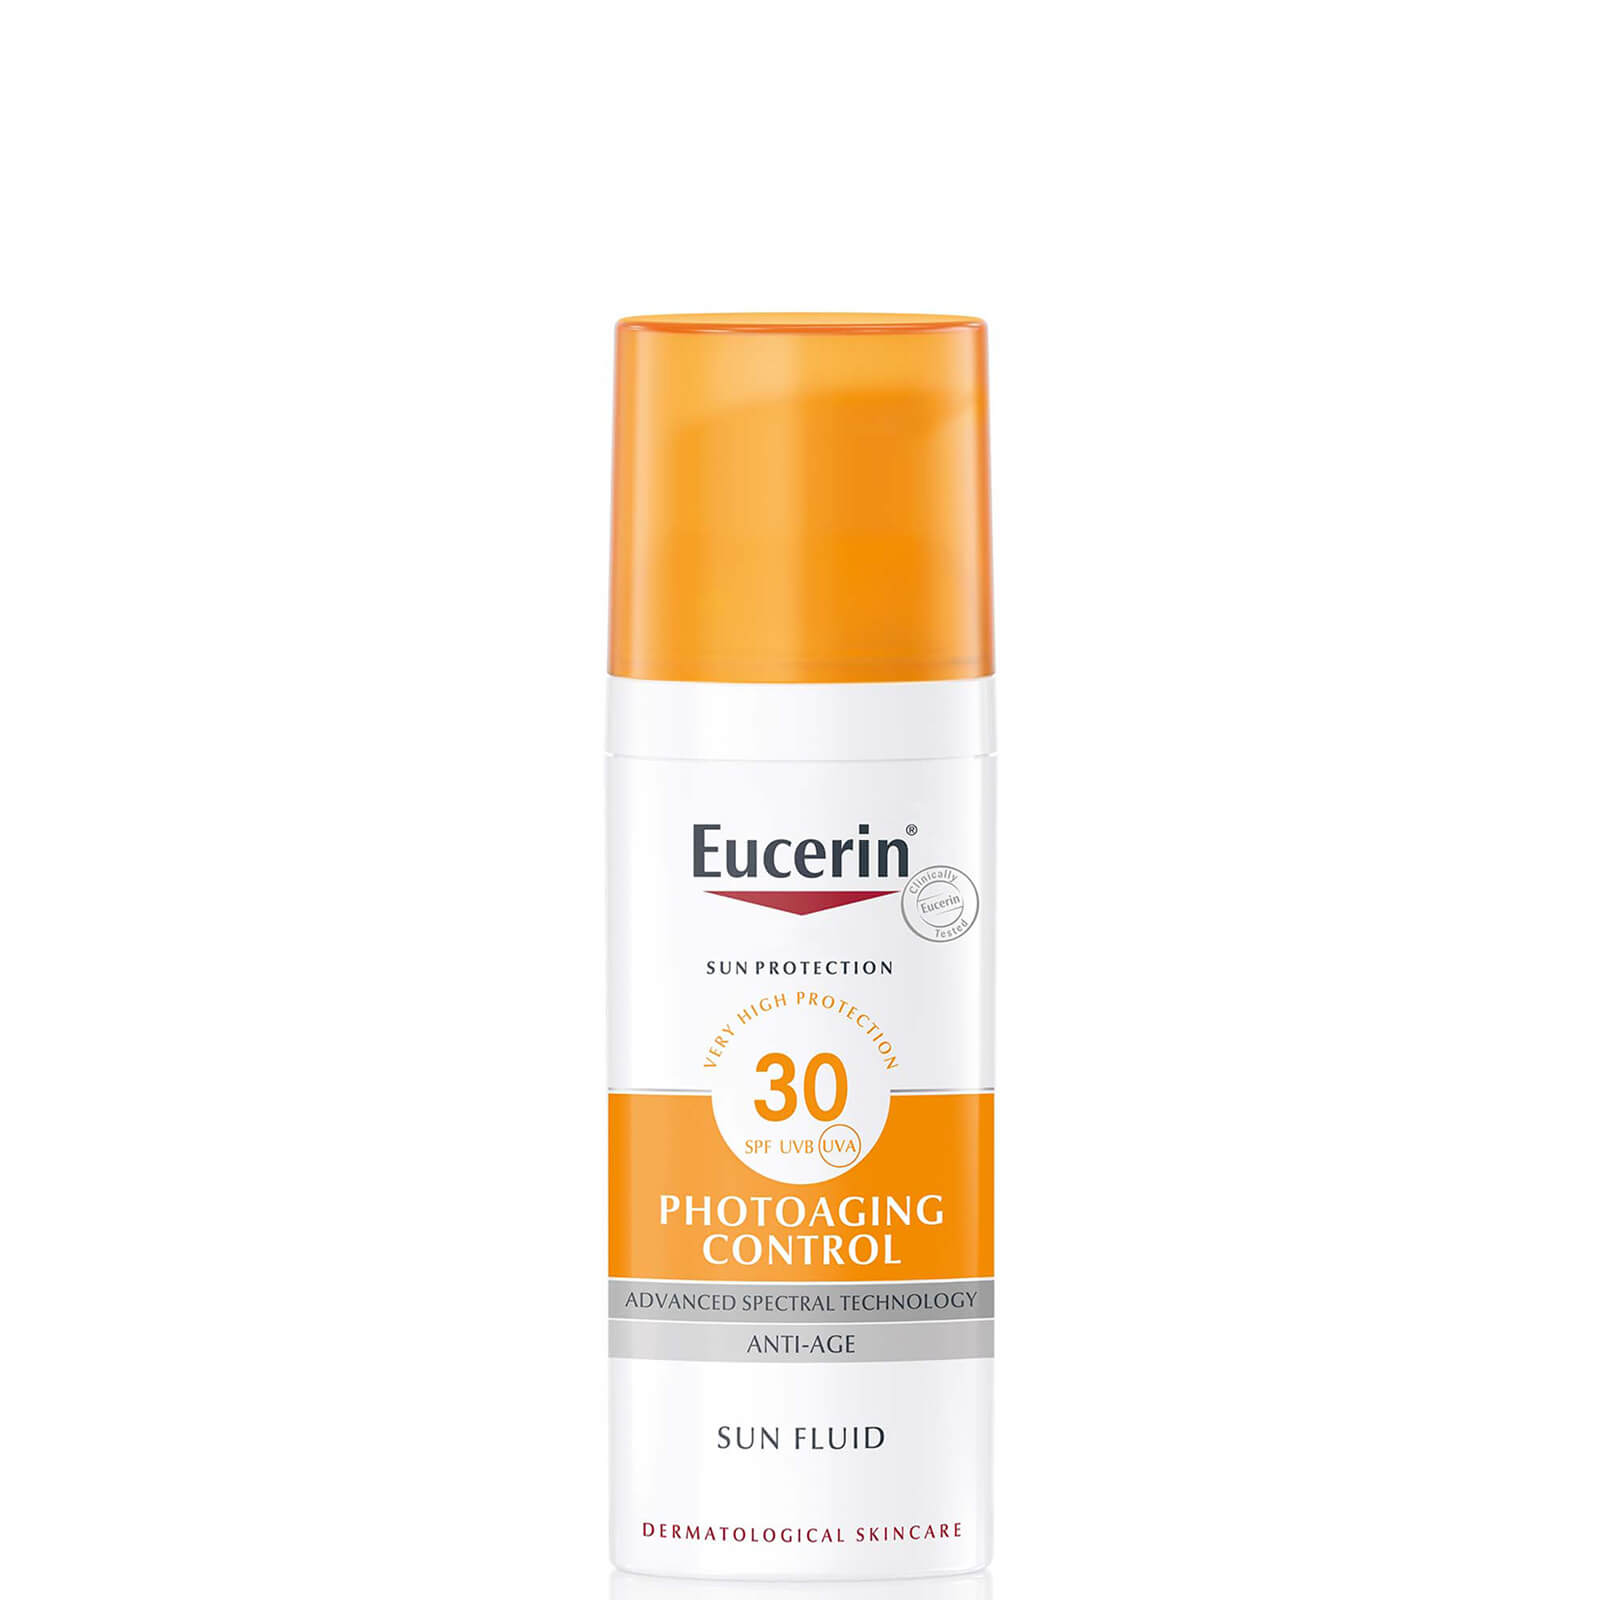 Eucerin(r) Sun Protection Sun Fluid Face SPF 30 50ml